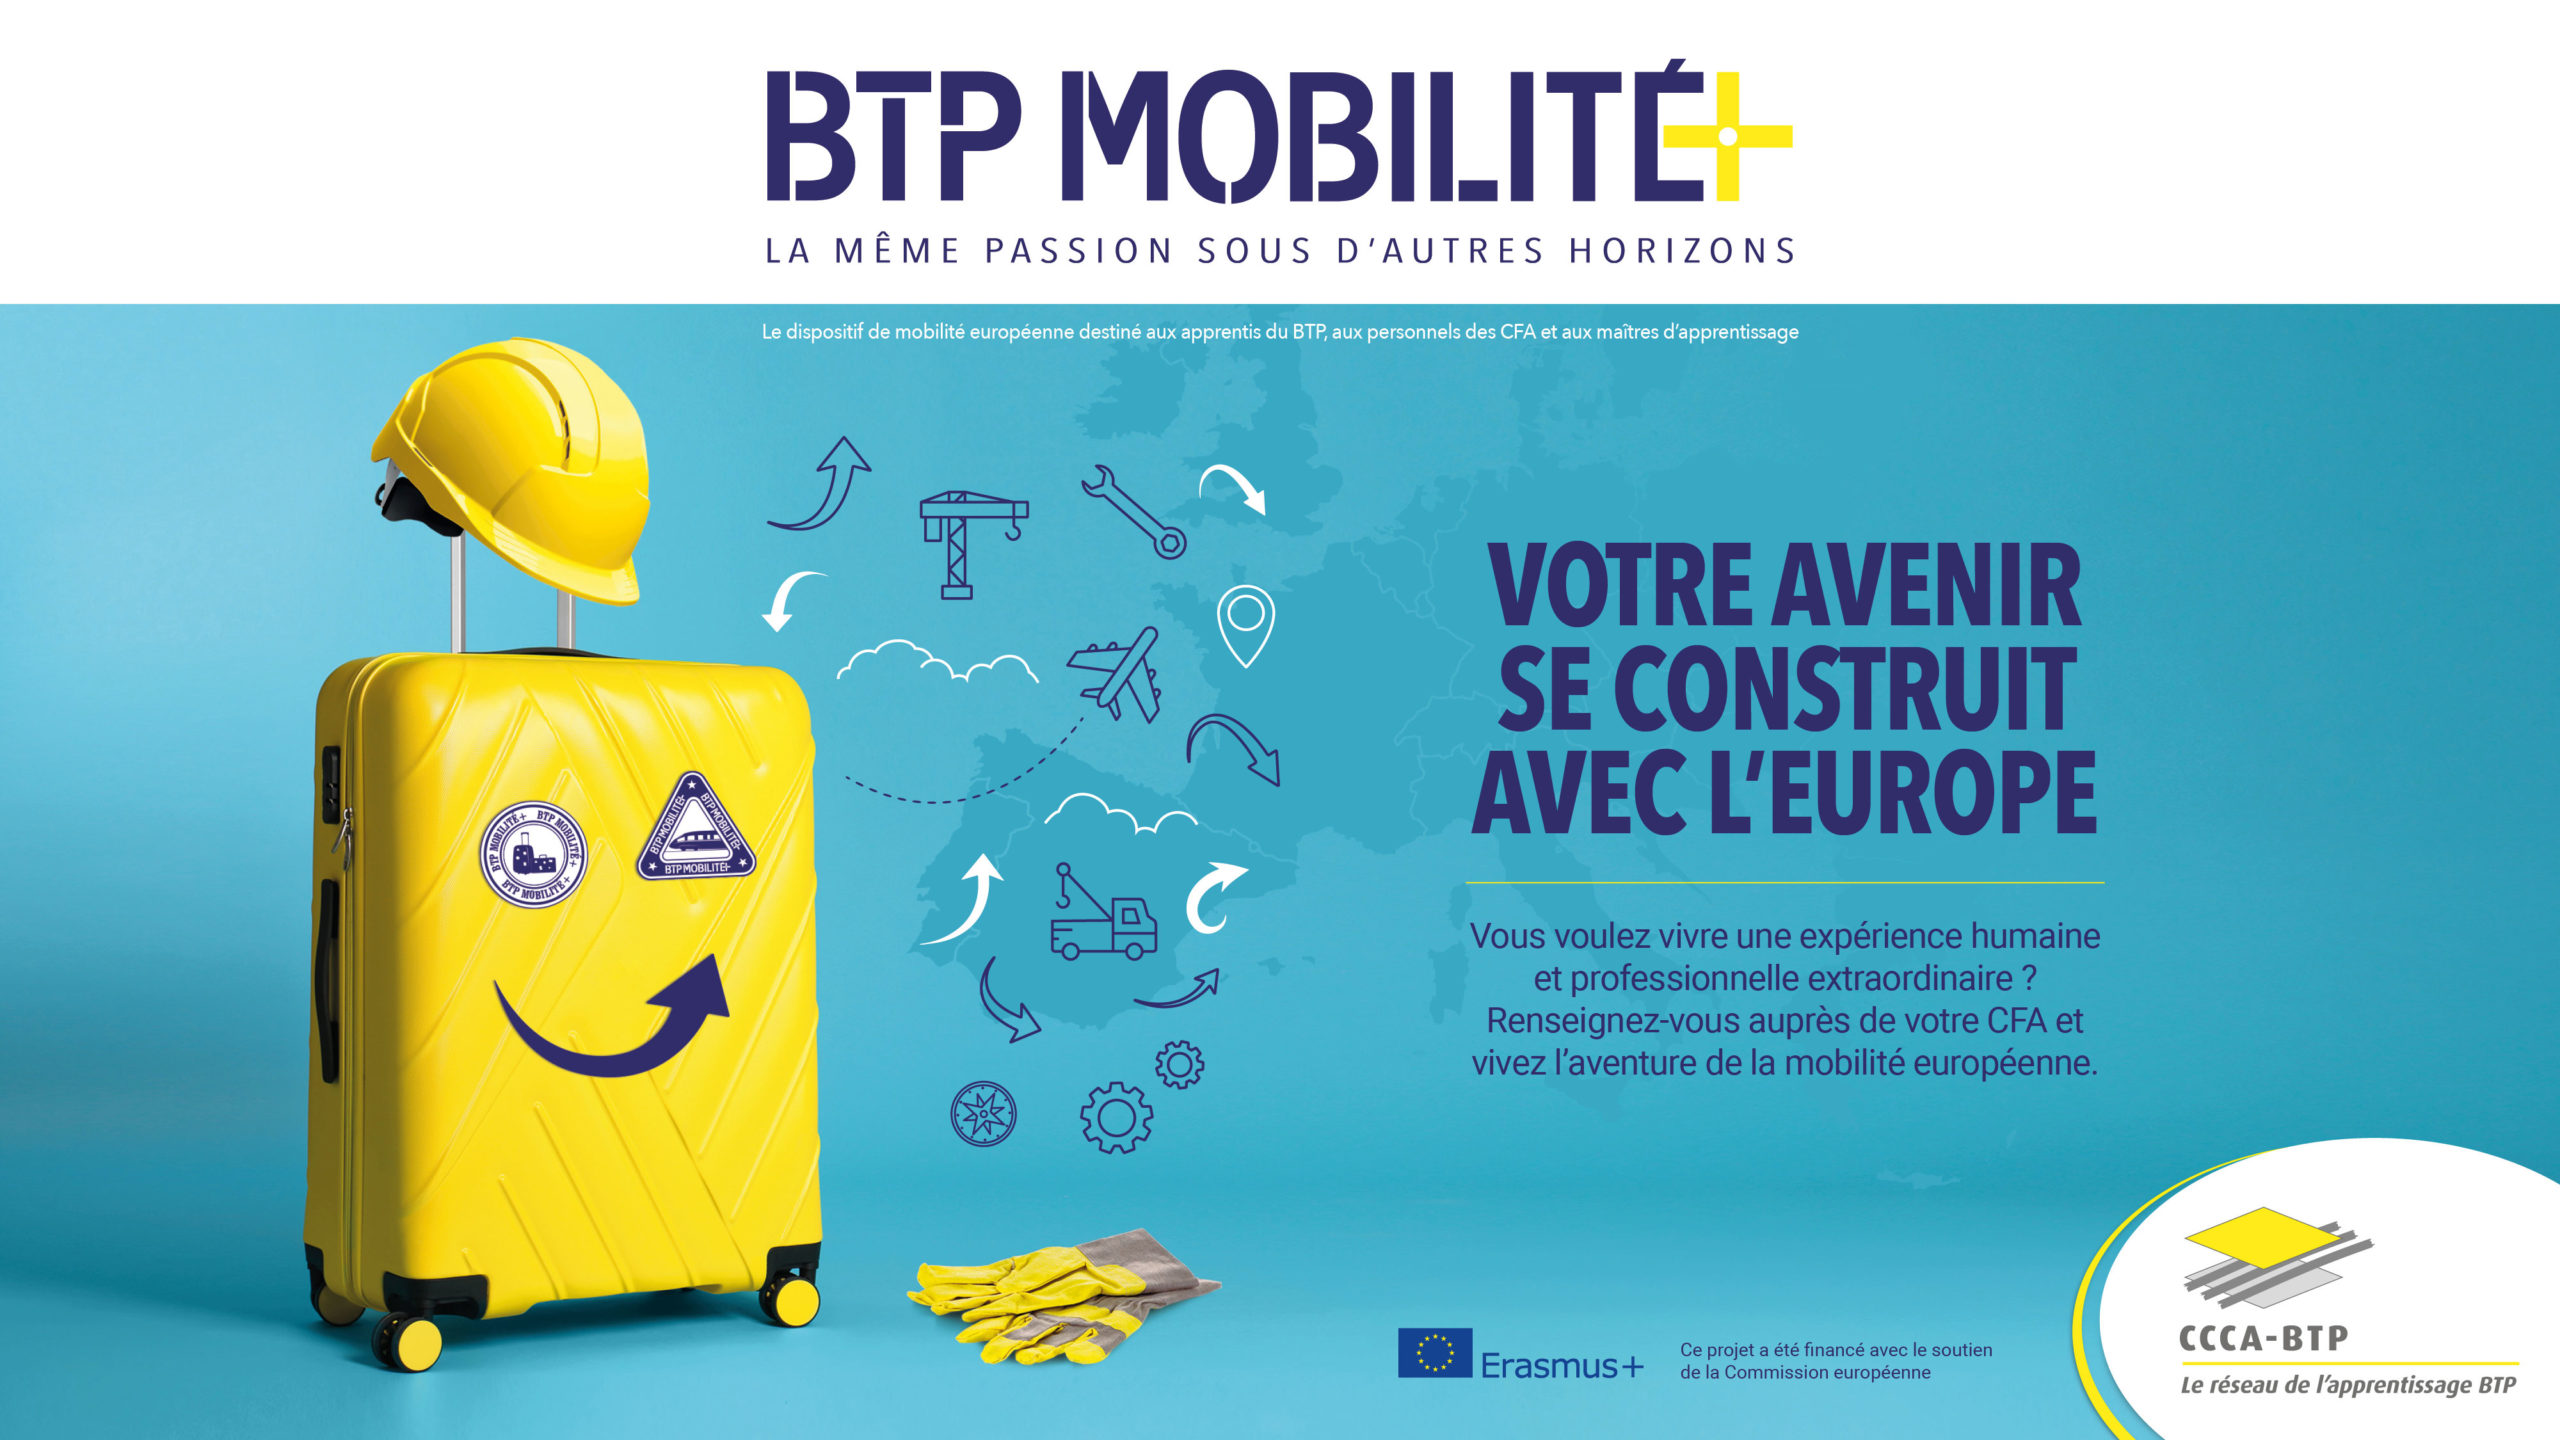 La dynamique du CCCA-BTP en faveur de la mobilité européenne